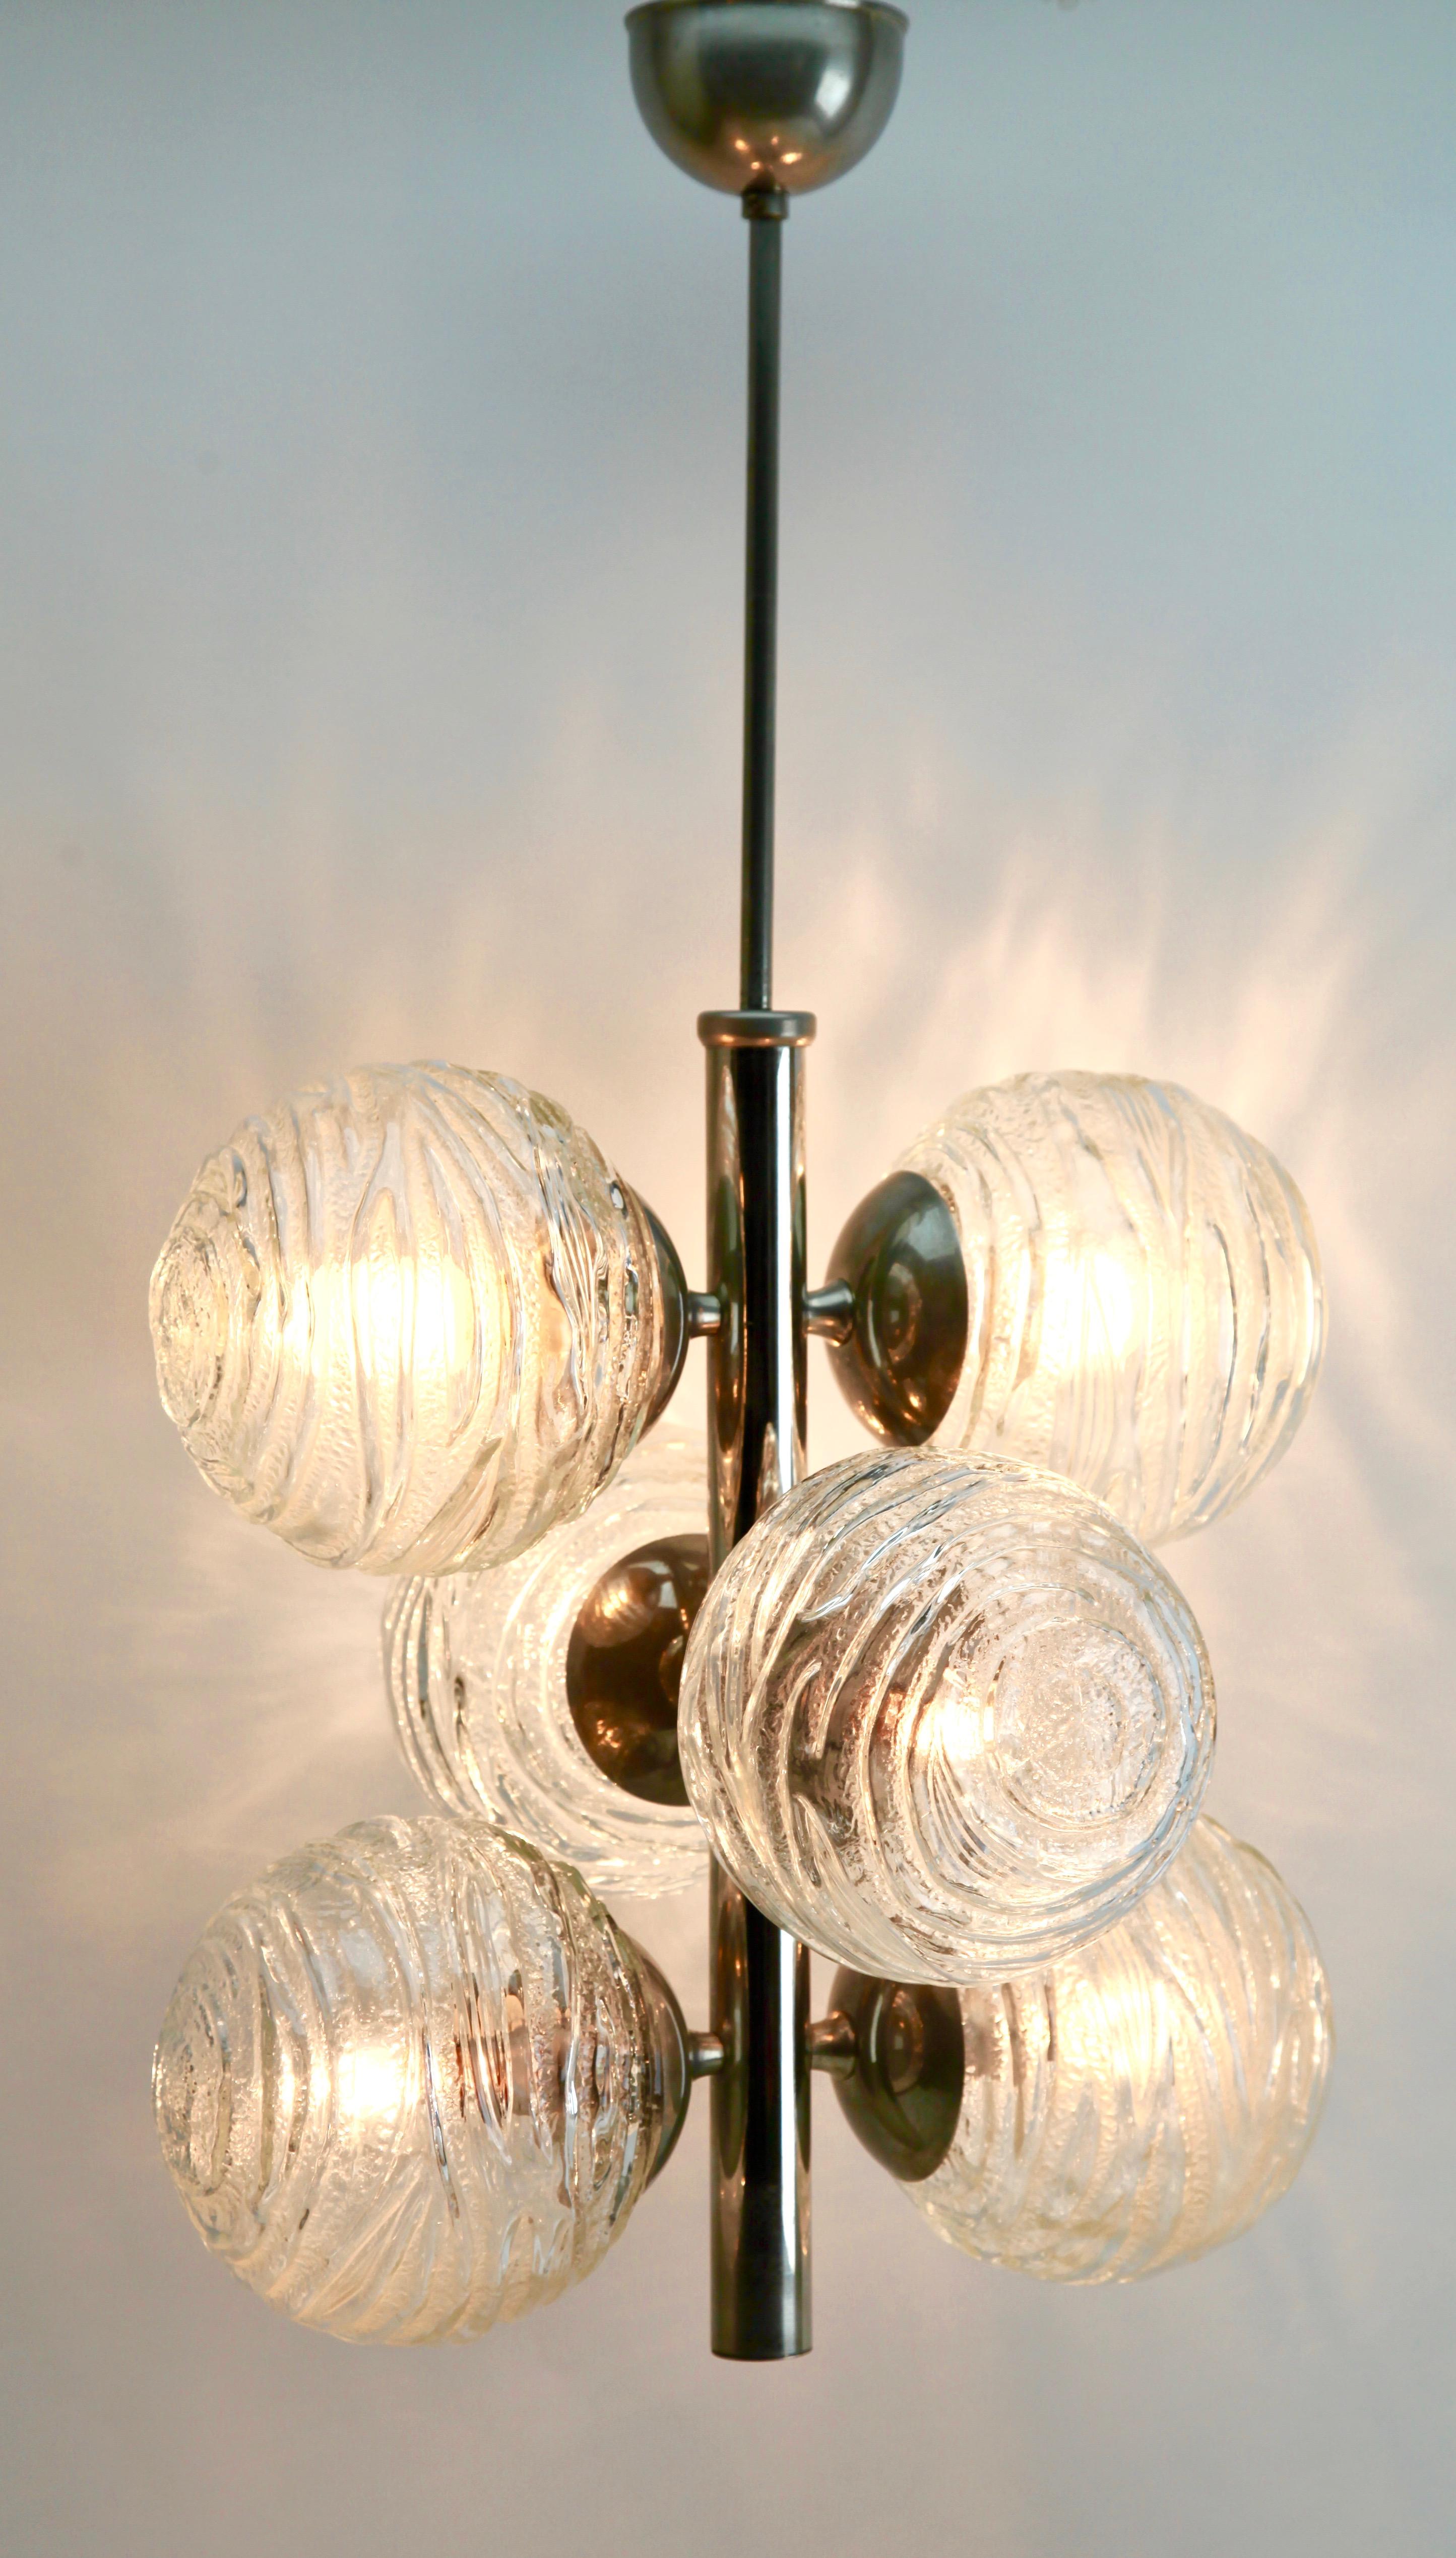 Issu de la gamme de la société Doria Leuchten, ce centre d'éclairage comporte six lampes (disposées en trois paires) sur une tige centrale chromée. Chaque lampe est munie d'une armature sur une plaque chromée et d'un abat-jour rond et globulaire en